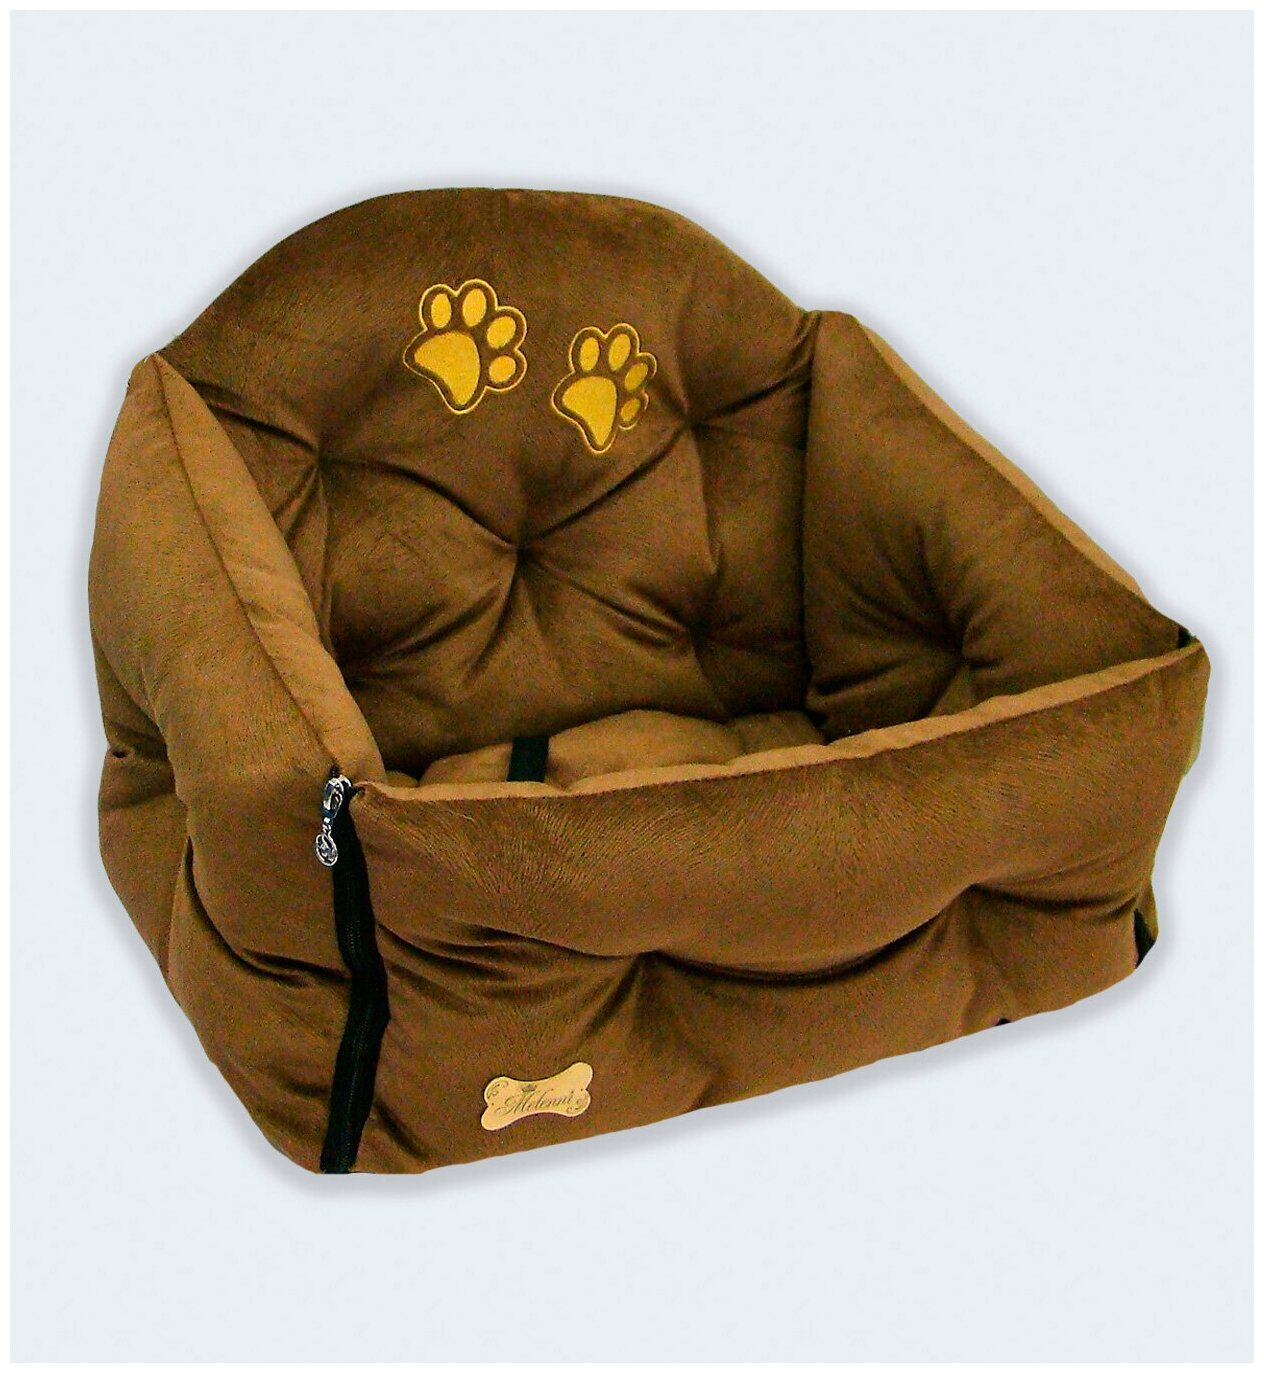 Автокресло-лежак для собак и кошек Melenni Стандарт Лапы 4(2.510) размер М, 57x55x45(высота спинки)x21(высота бортов), см; Вес: 2200 гр